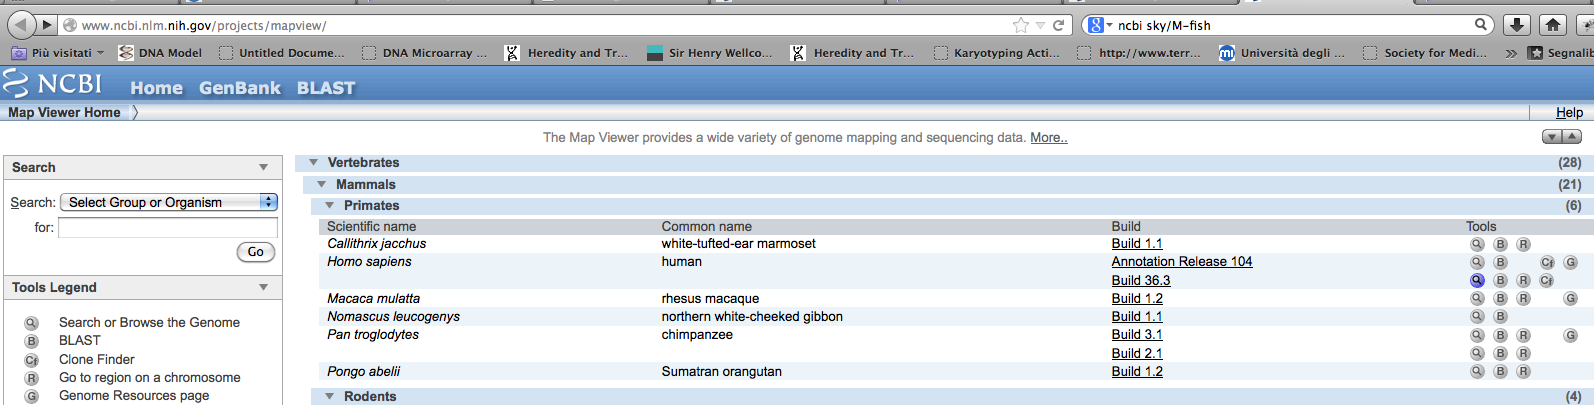 Viewer MAP VIEW che mostra una ampia varietà di genomi sequenziati sa